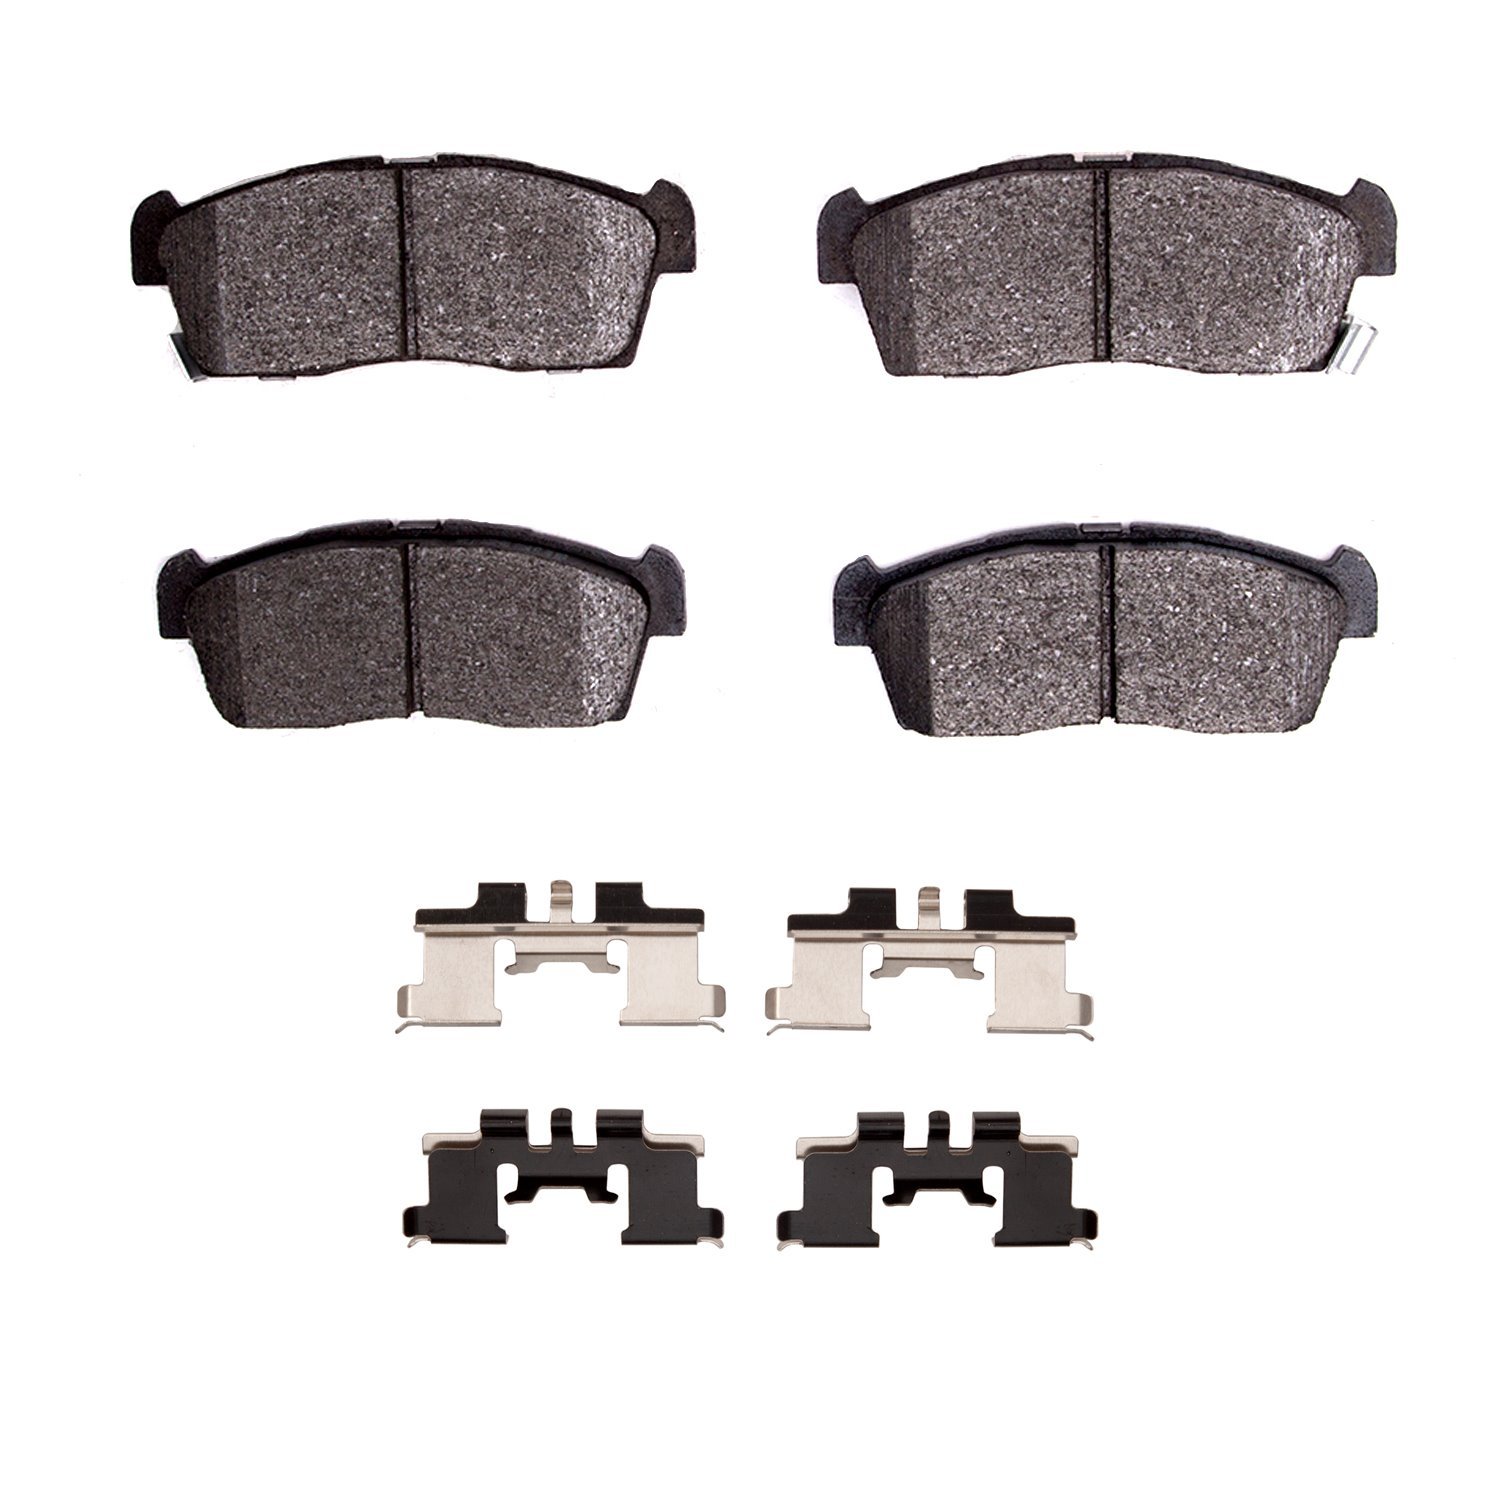 1310-1658-01 3000-Series Ceramic Brake Pads & Hardware Kit, 2012-2017 Mitsubishi, Position: Front